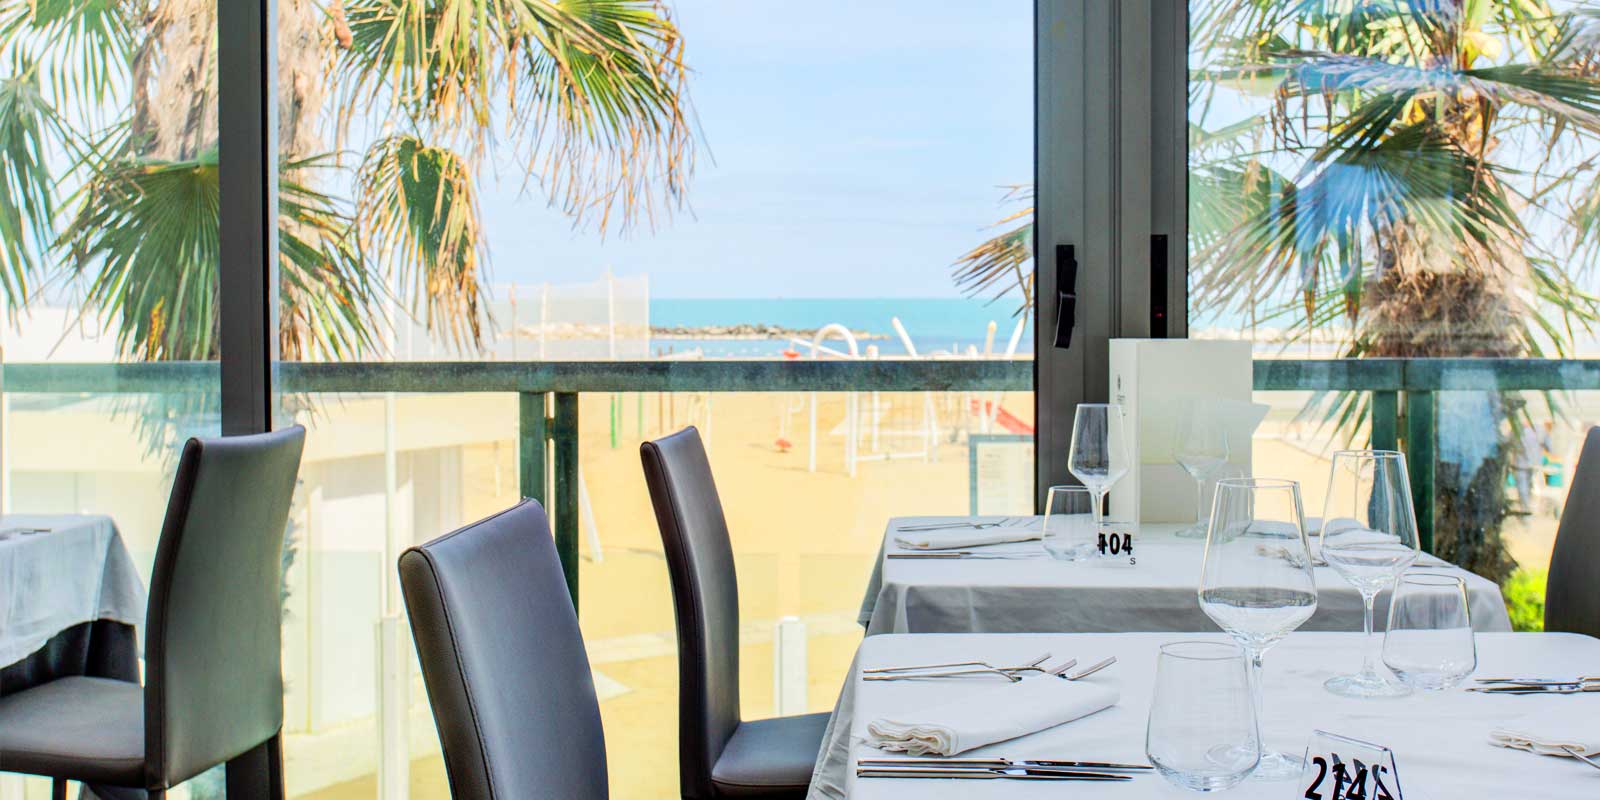 Restaurant room overlooking the sea